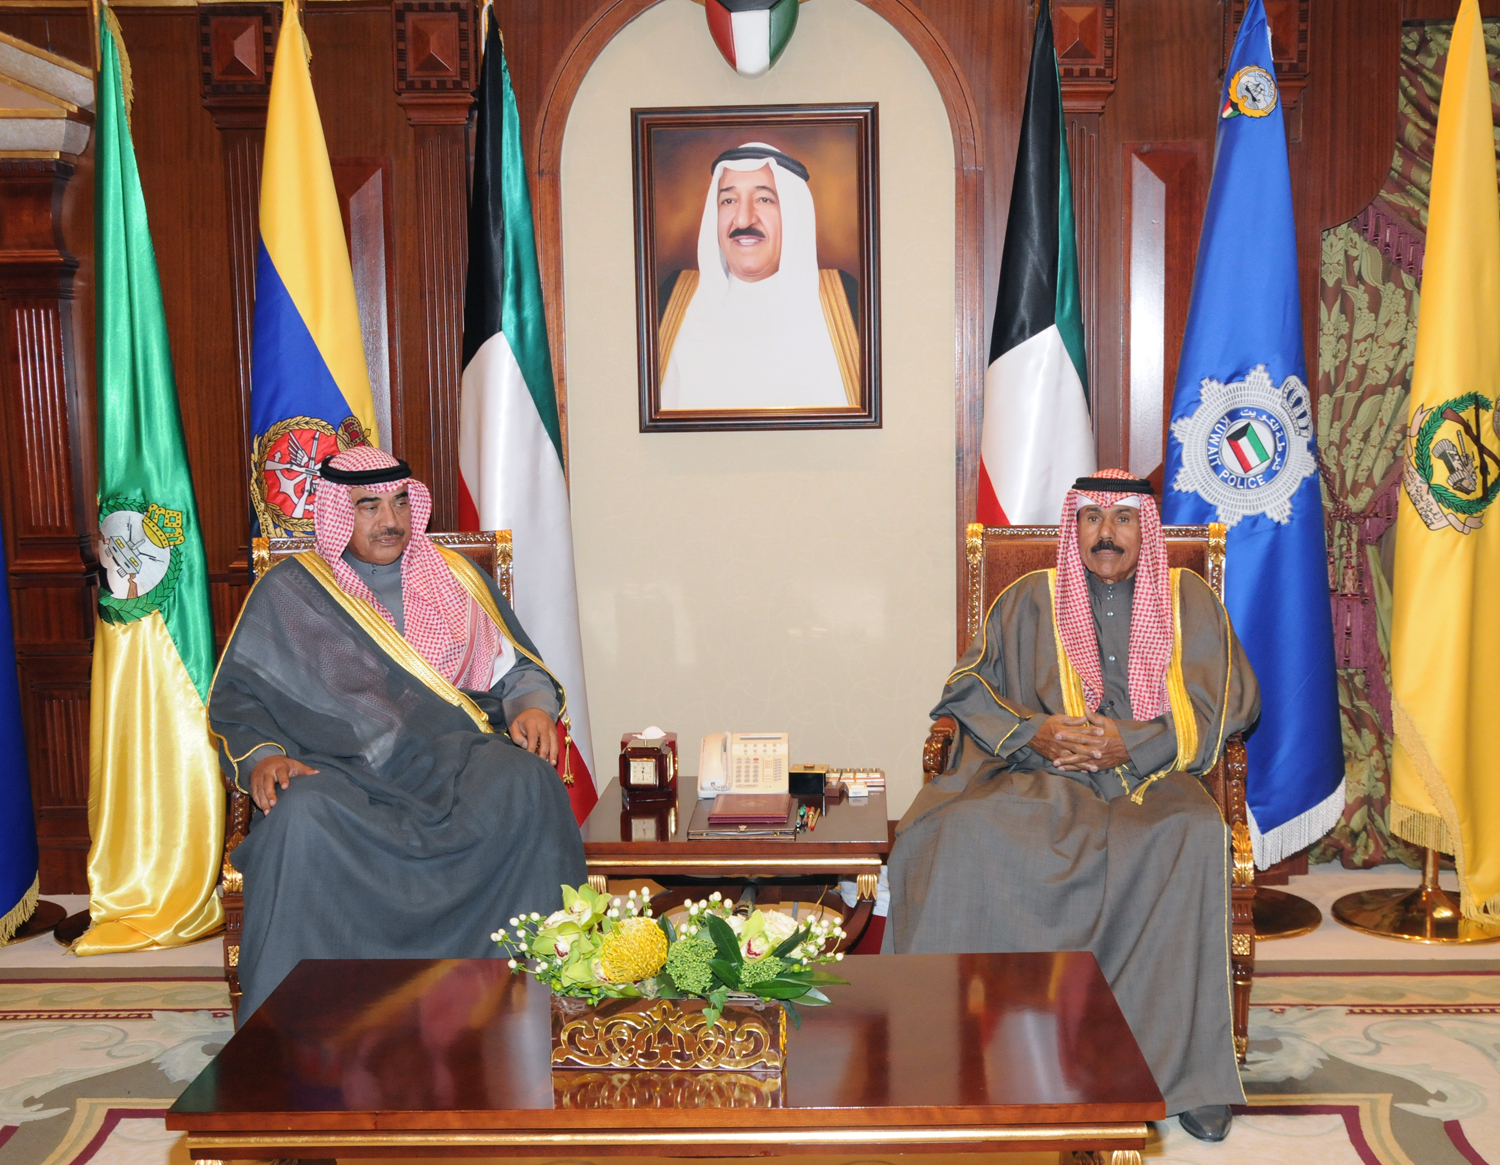 His Highness the Crown Prince Sheikh Nawaf Al-Ahmad Al-Jaber Al-Sabah received First Deputy Prime Minister and Foreign Minister Sheikh Sabah Al-Khaled Al-Hamad Al-Sabah